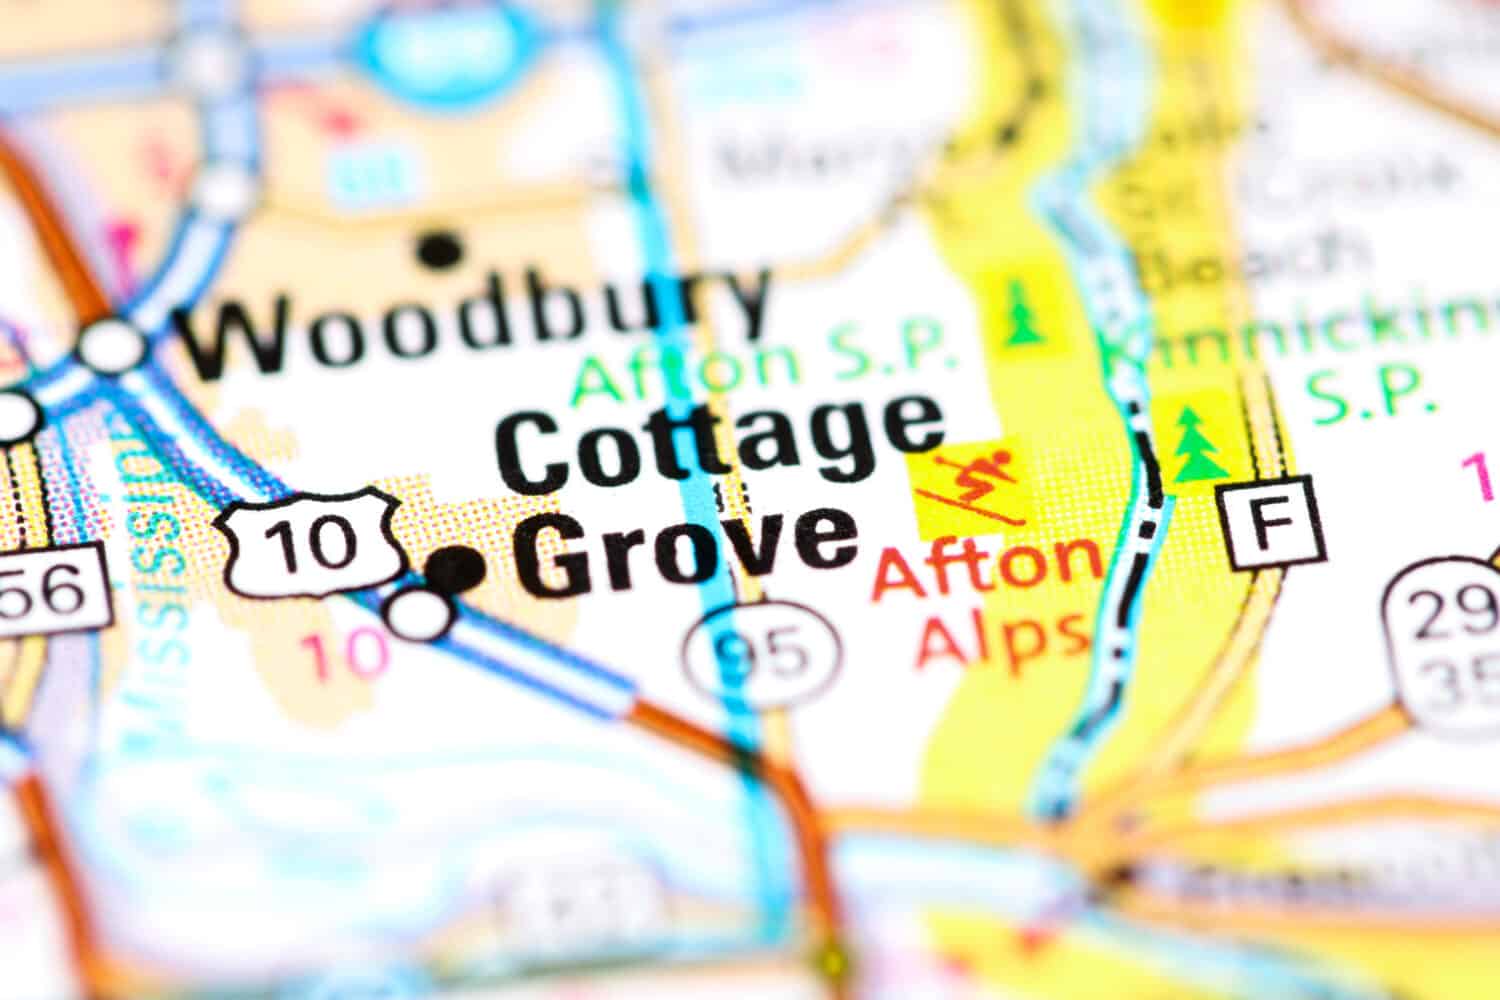 Cottage Grove. Minnesota. USA on a map